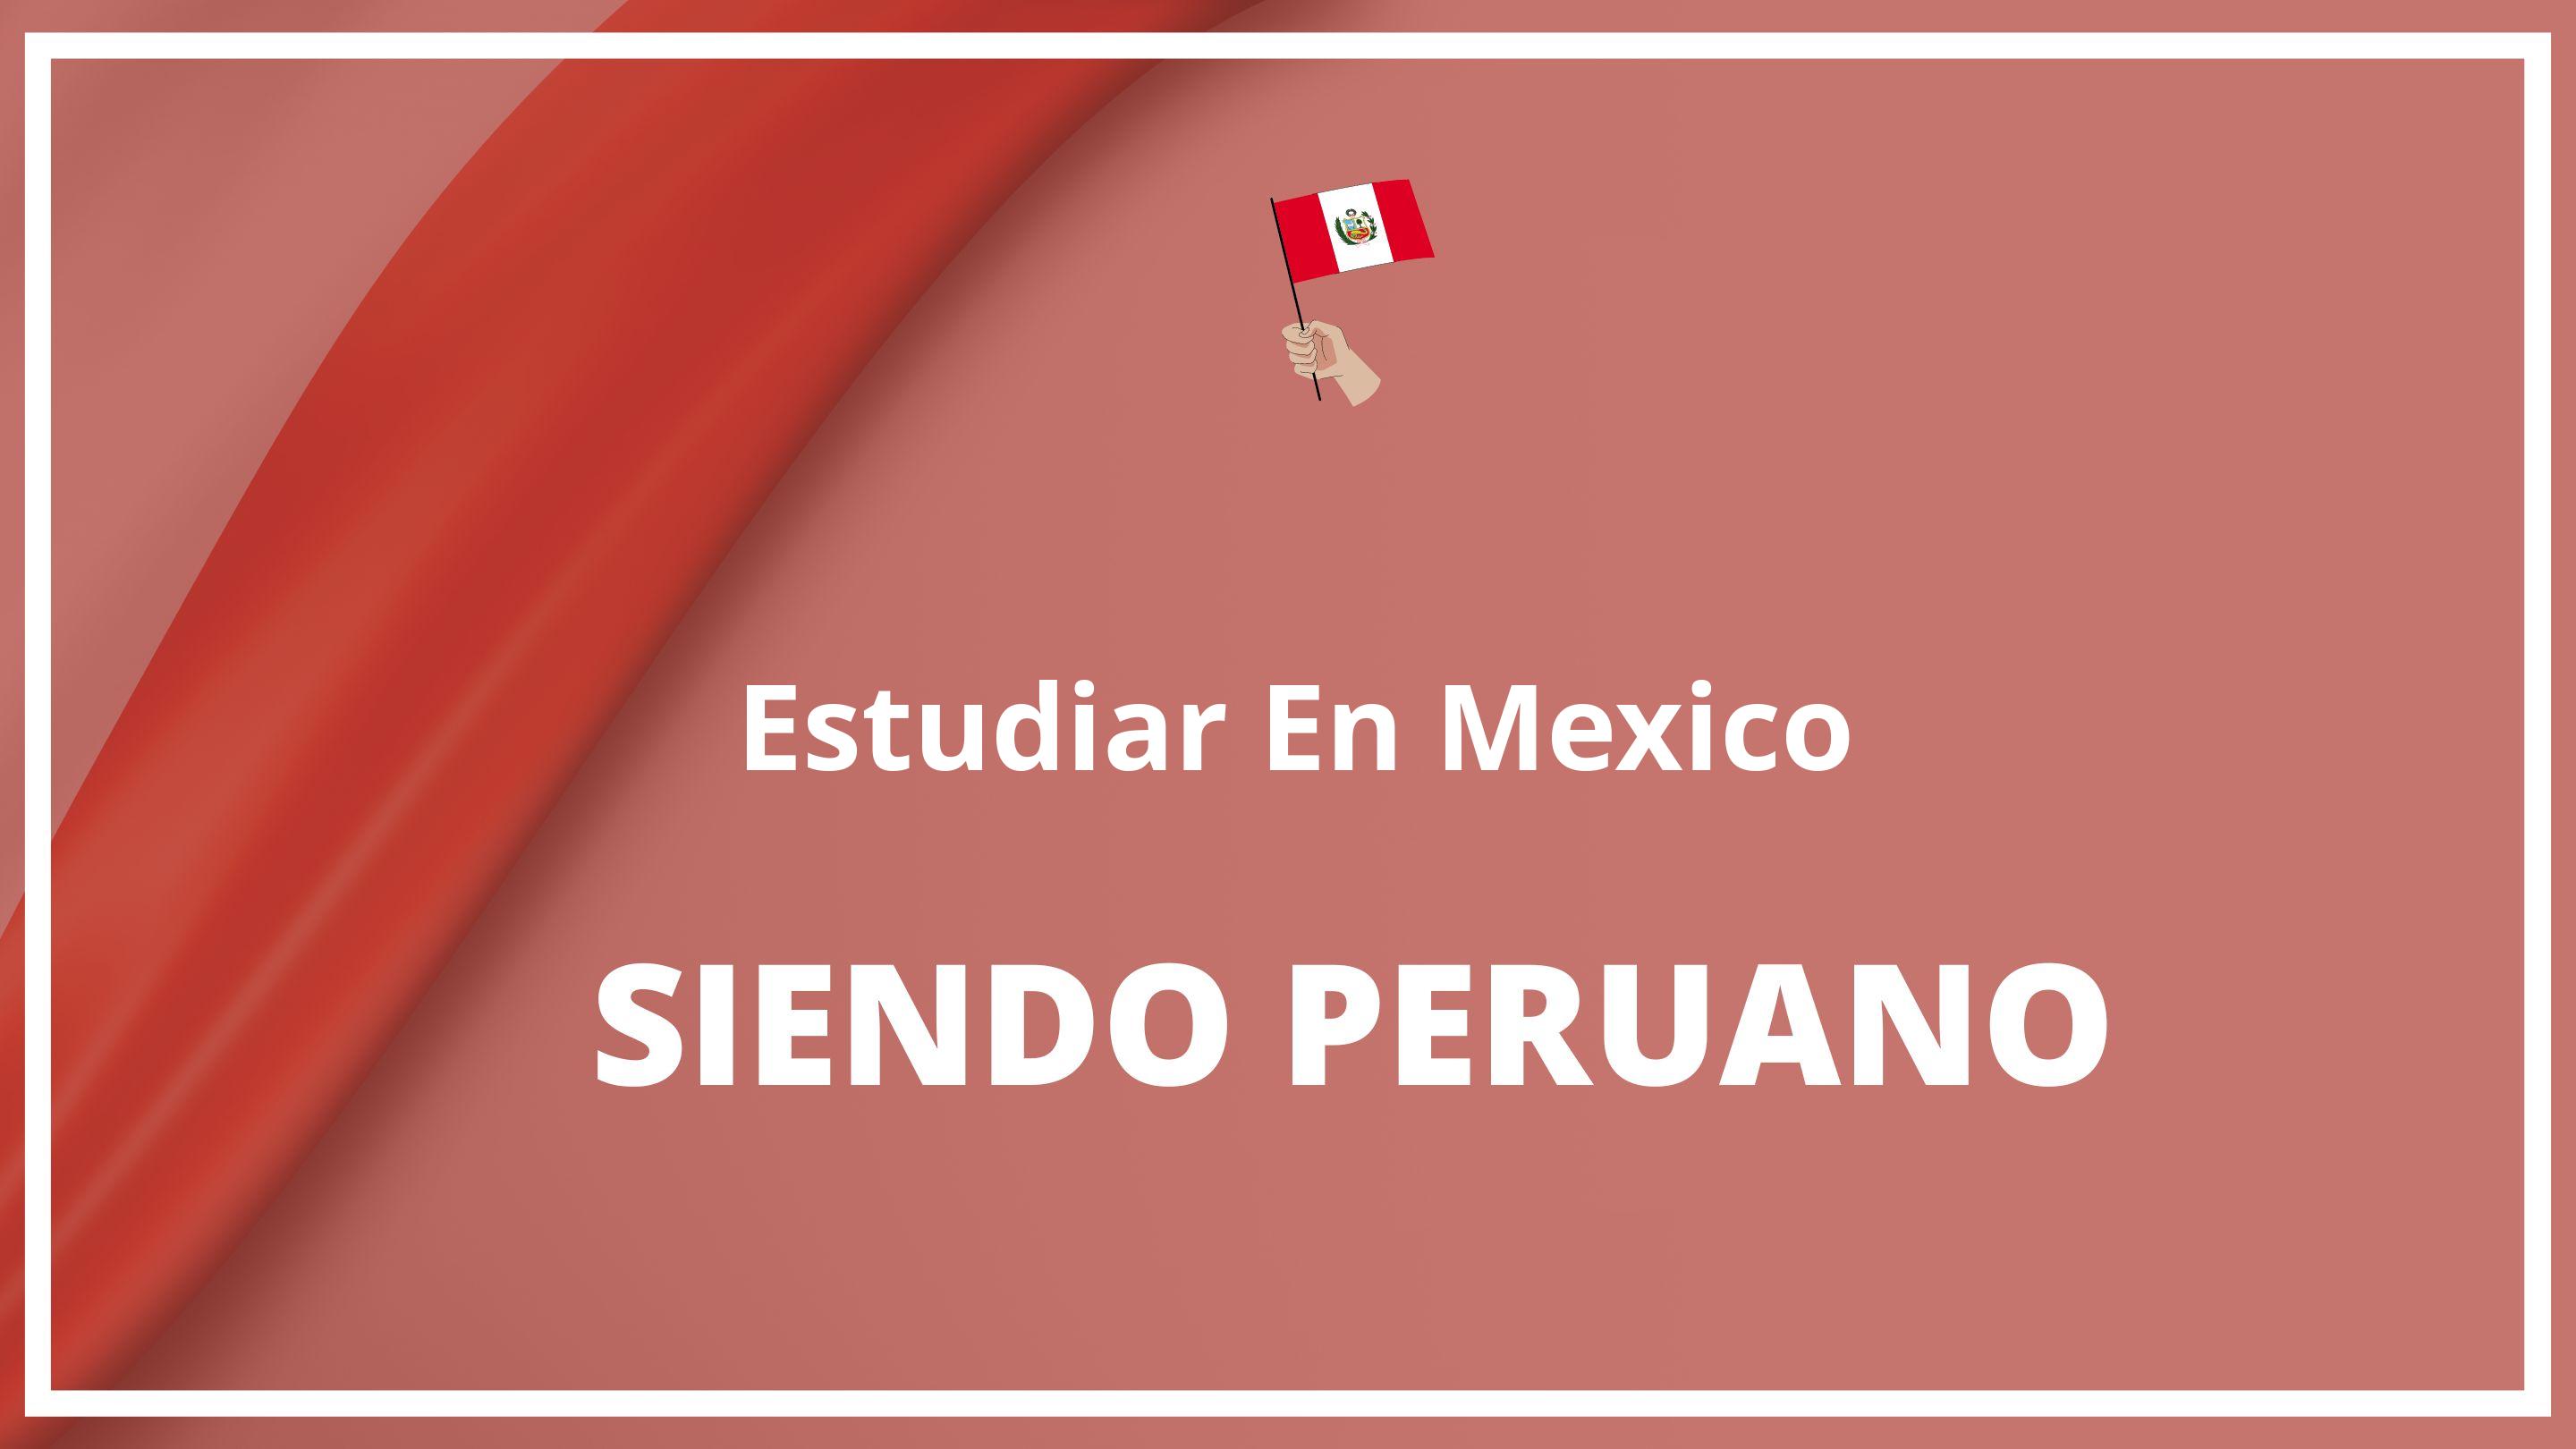 Como estudiar en mexico siendo peruano